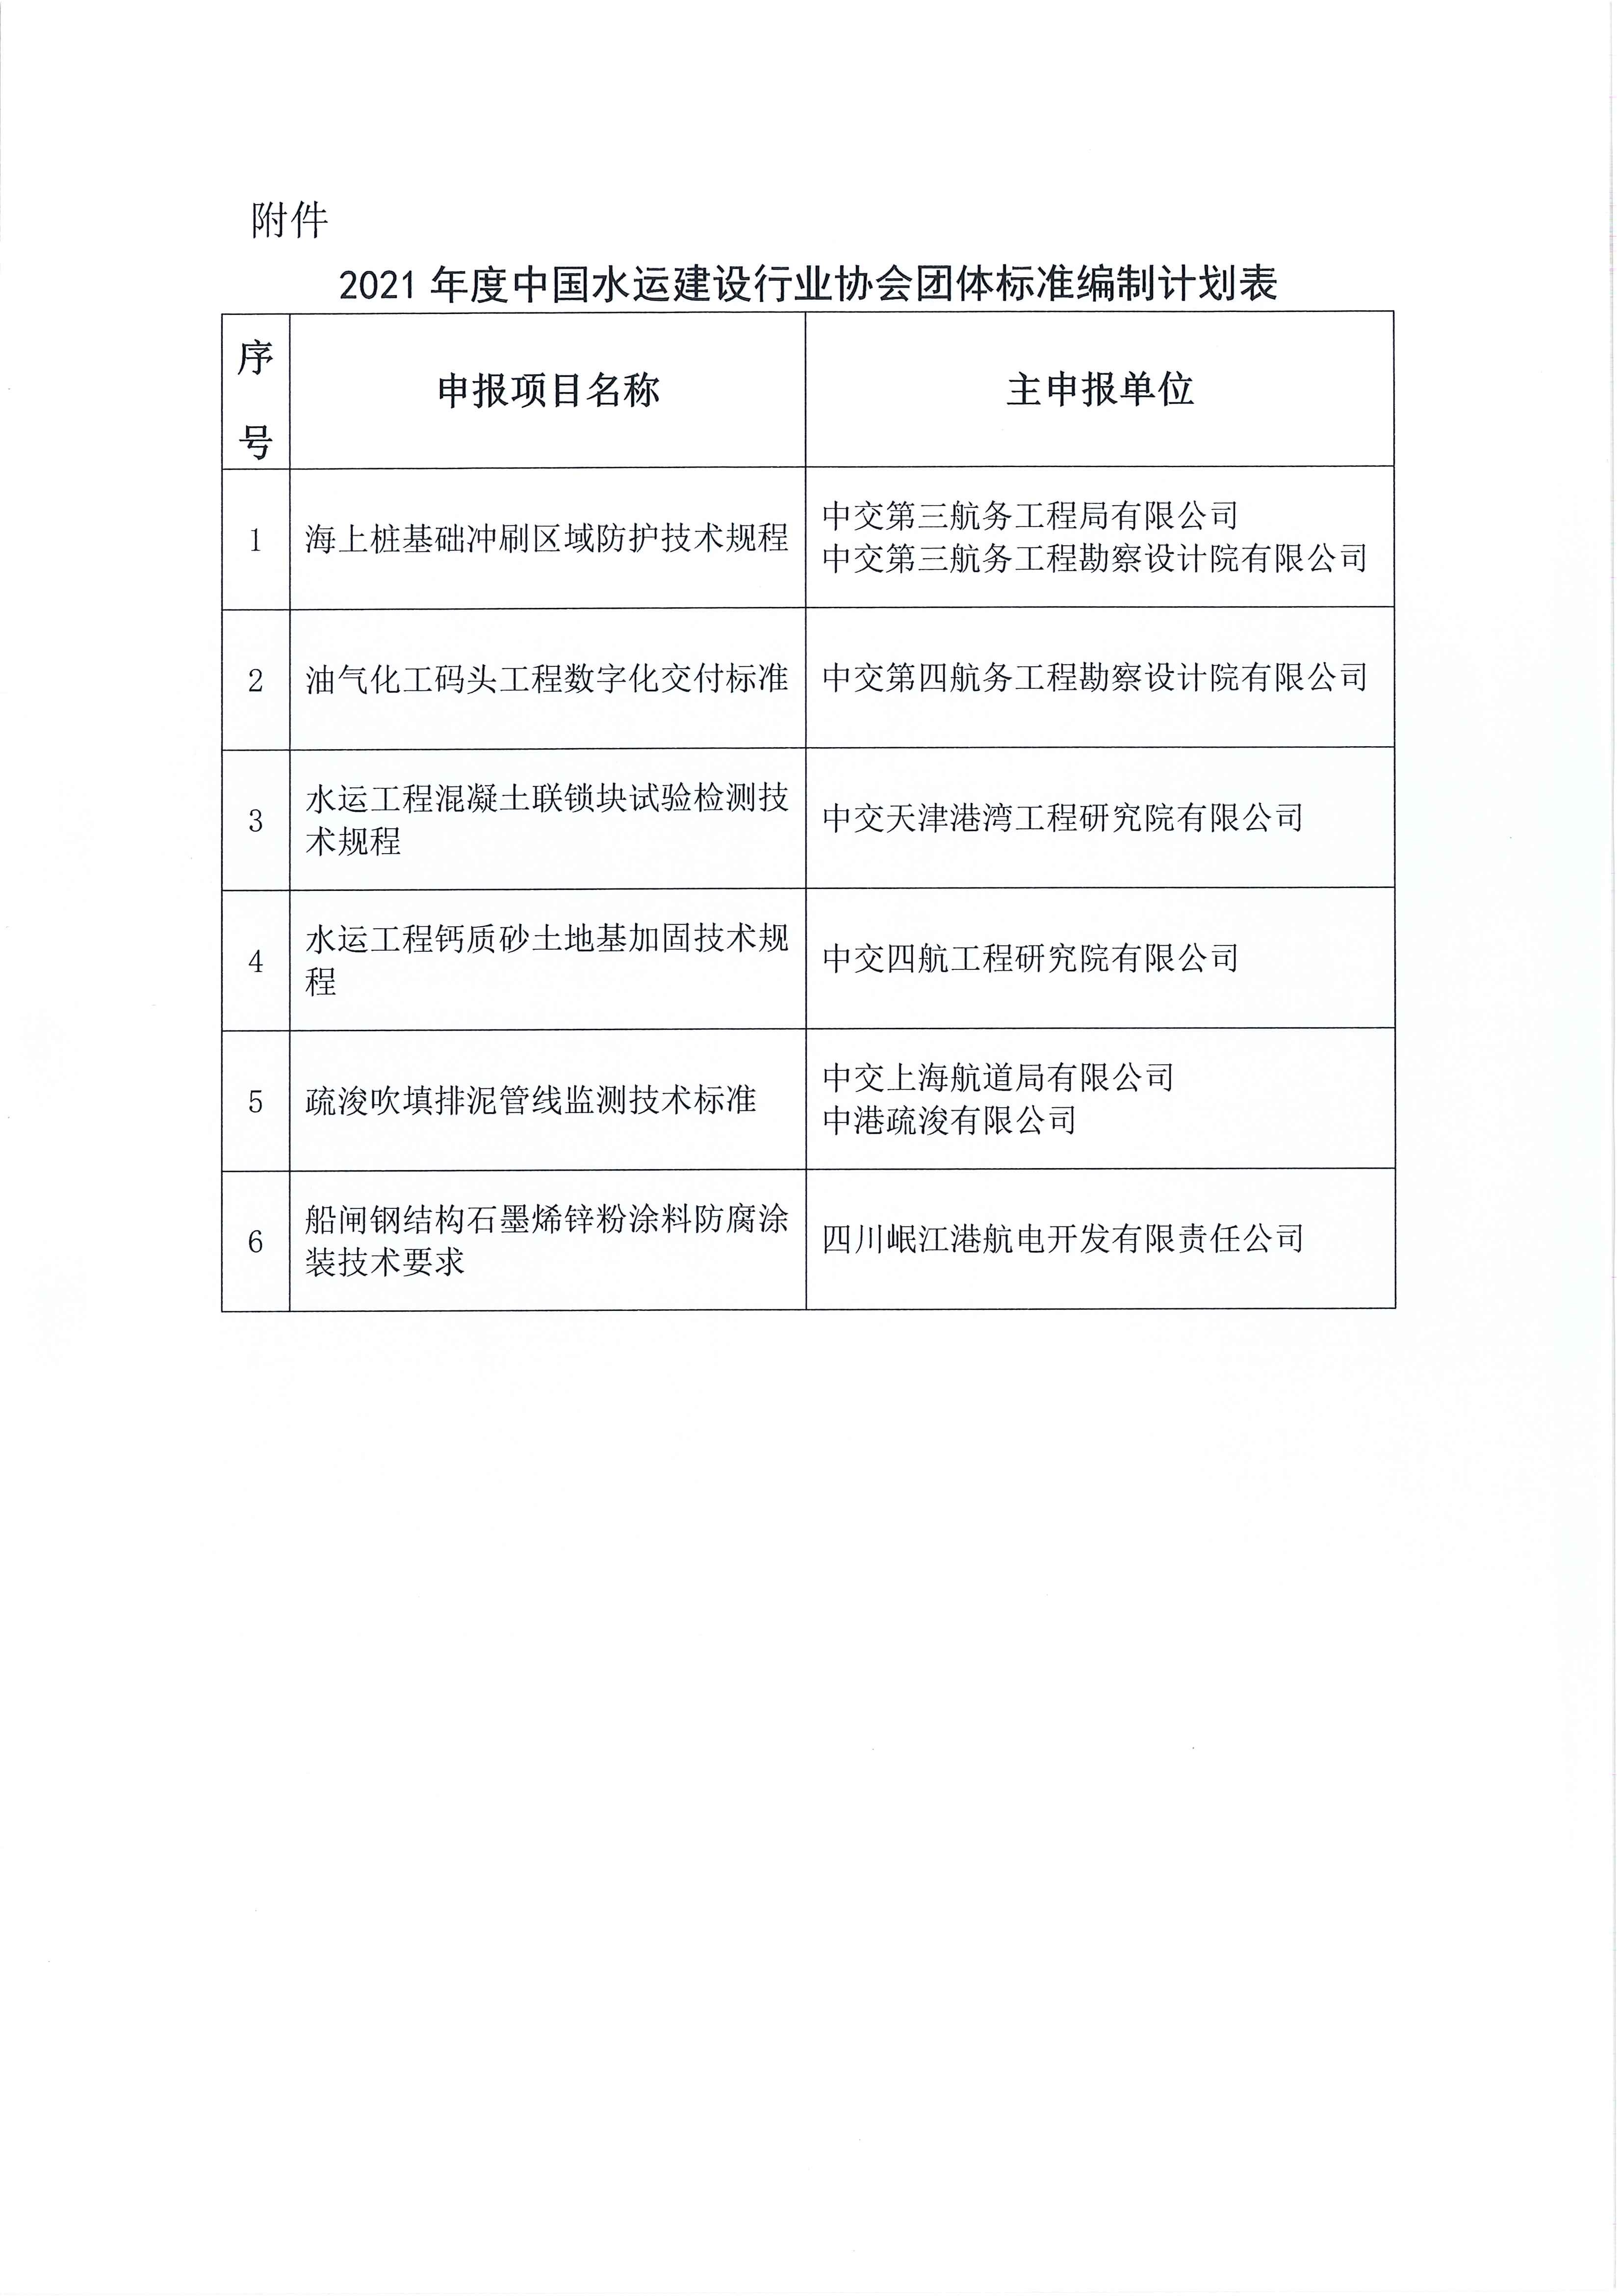 关于发布 2020年亚搏电竞app网站 [中国]有限公司团体标准编制计划的通知_页面_2.jpg